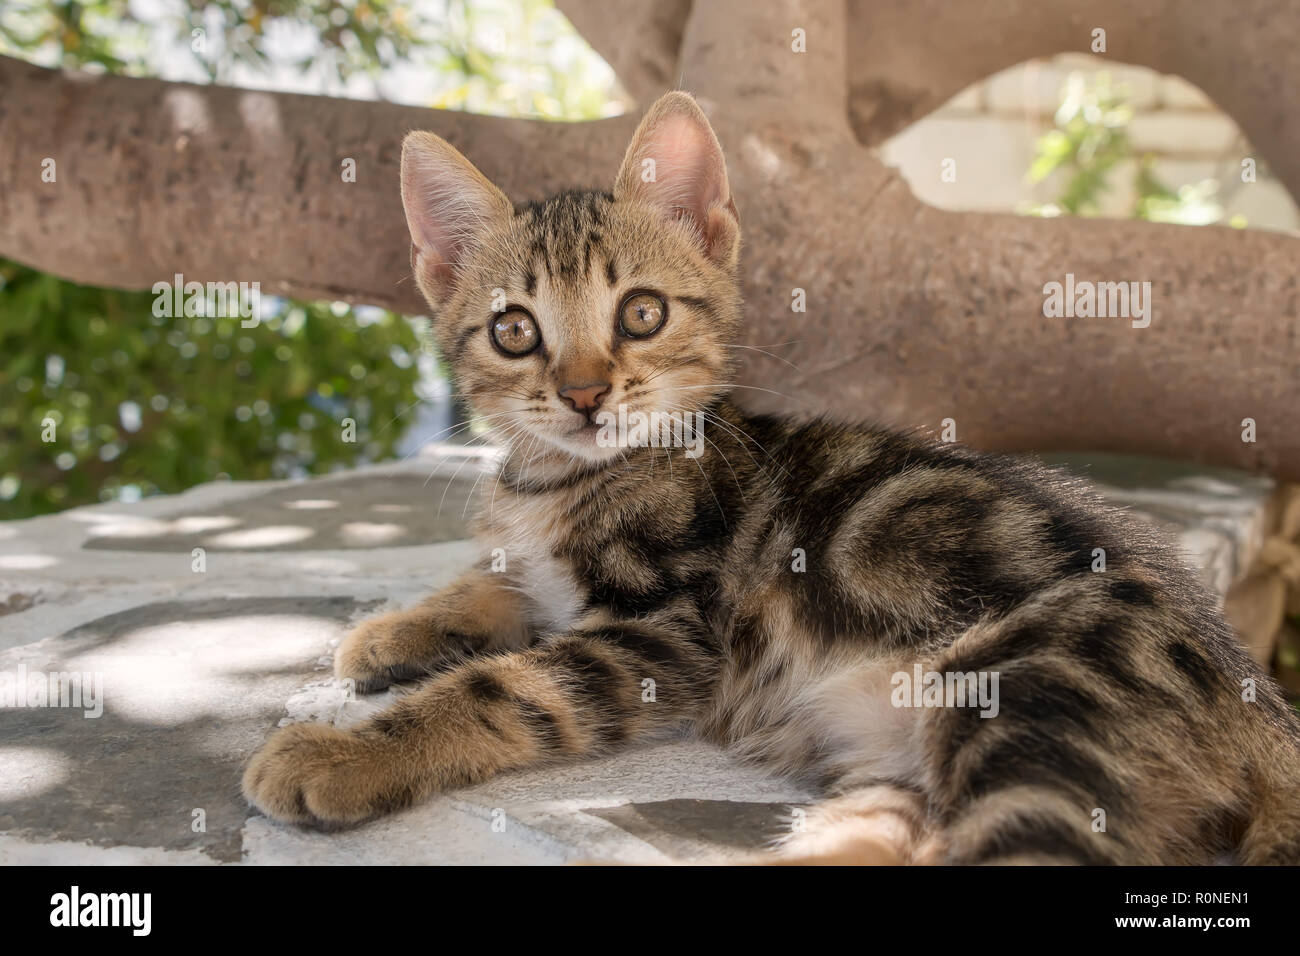 Cute Baby Kätzchen, Classic Brown tabby, ruht auf einer Wand und schaut mit großen Augen, Ägäische Inseln, Griechenland, Europa Stockfoto